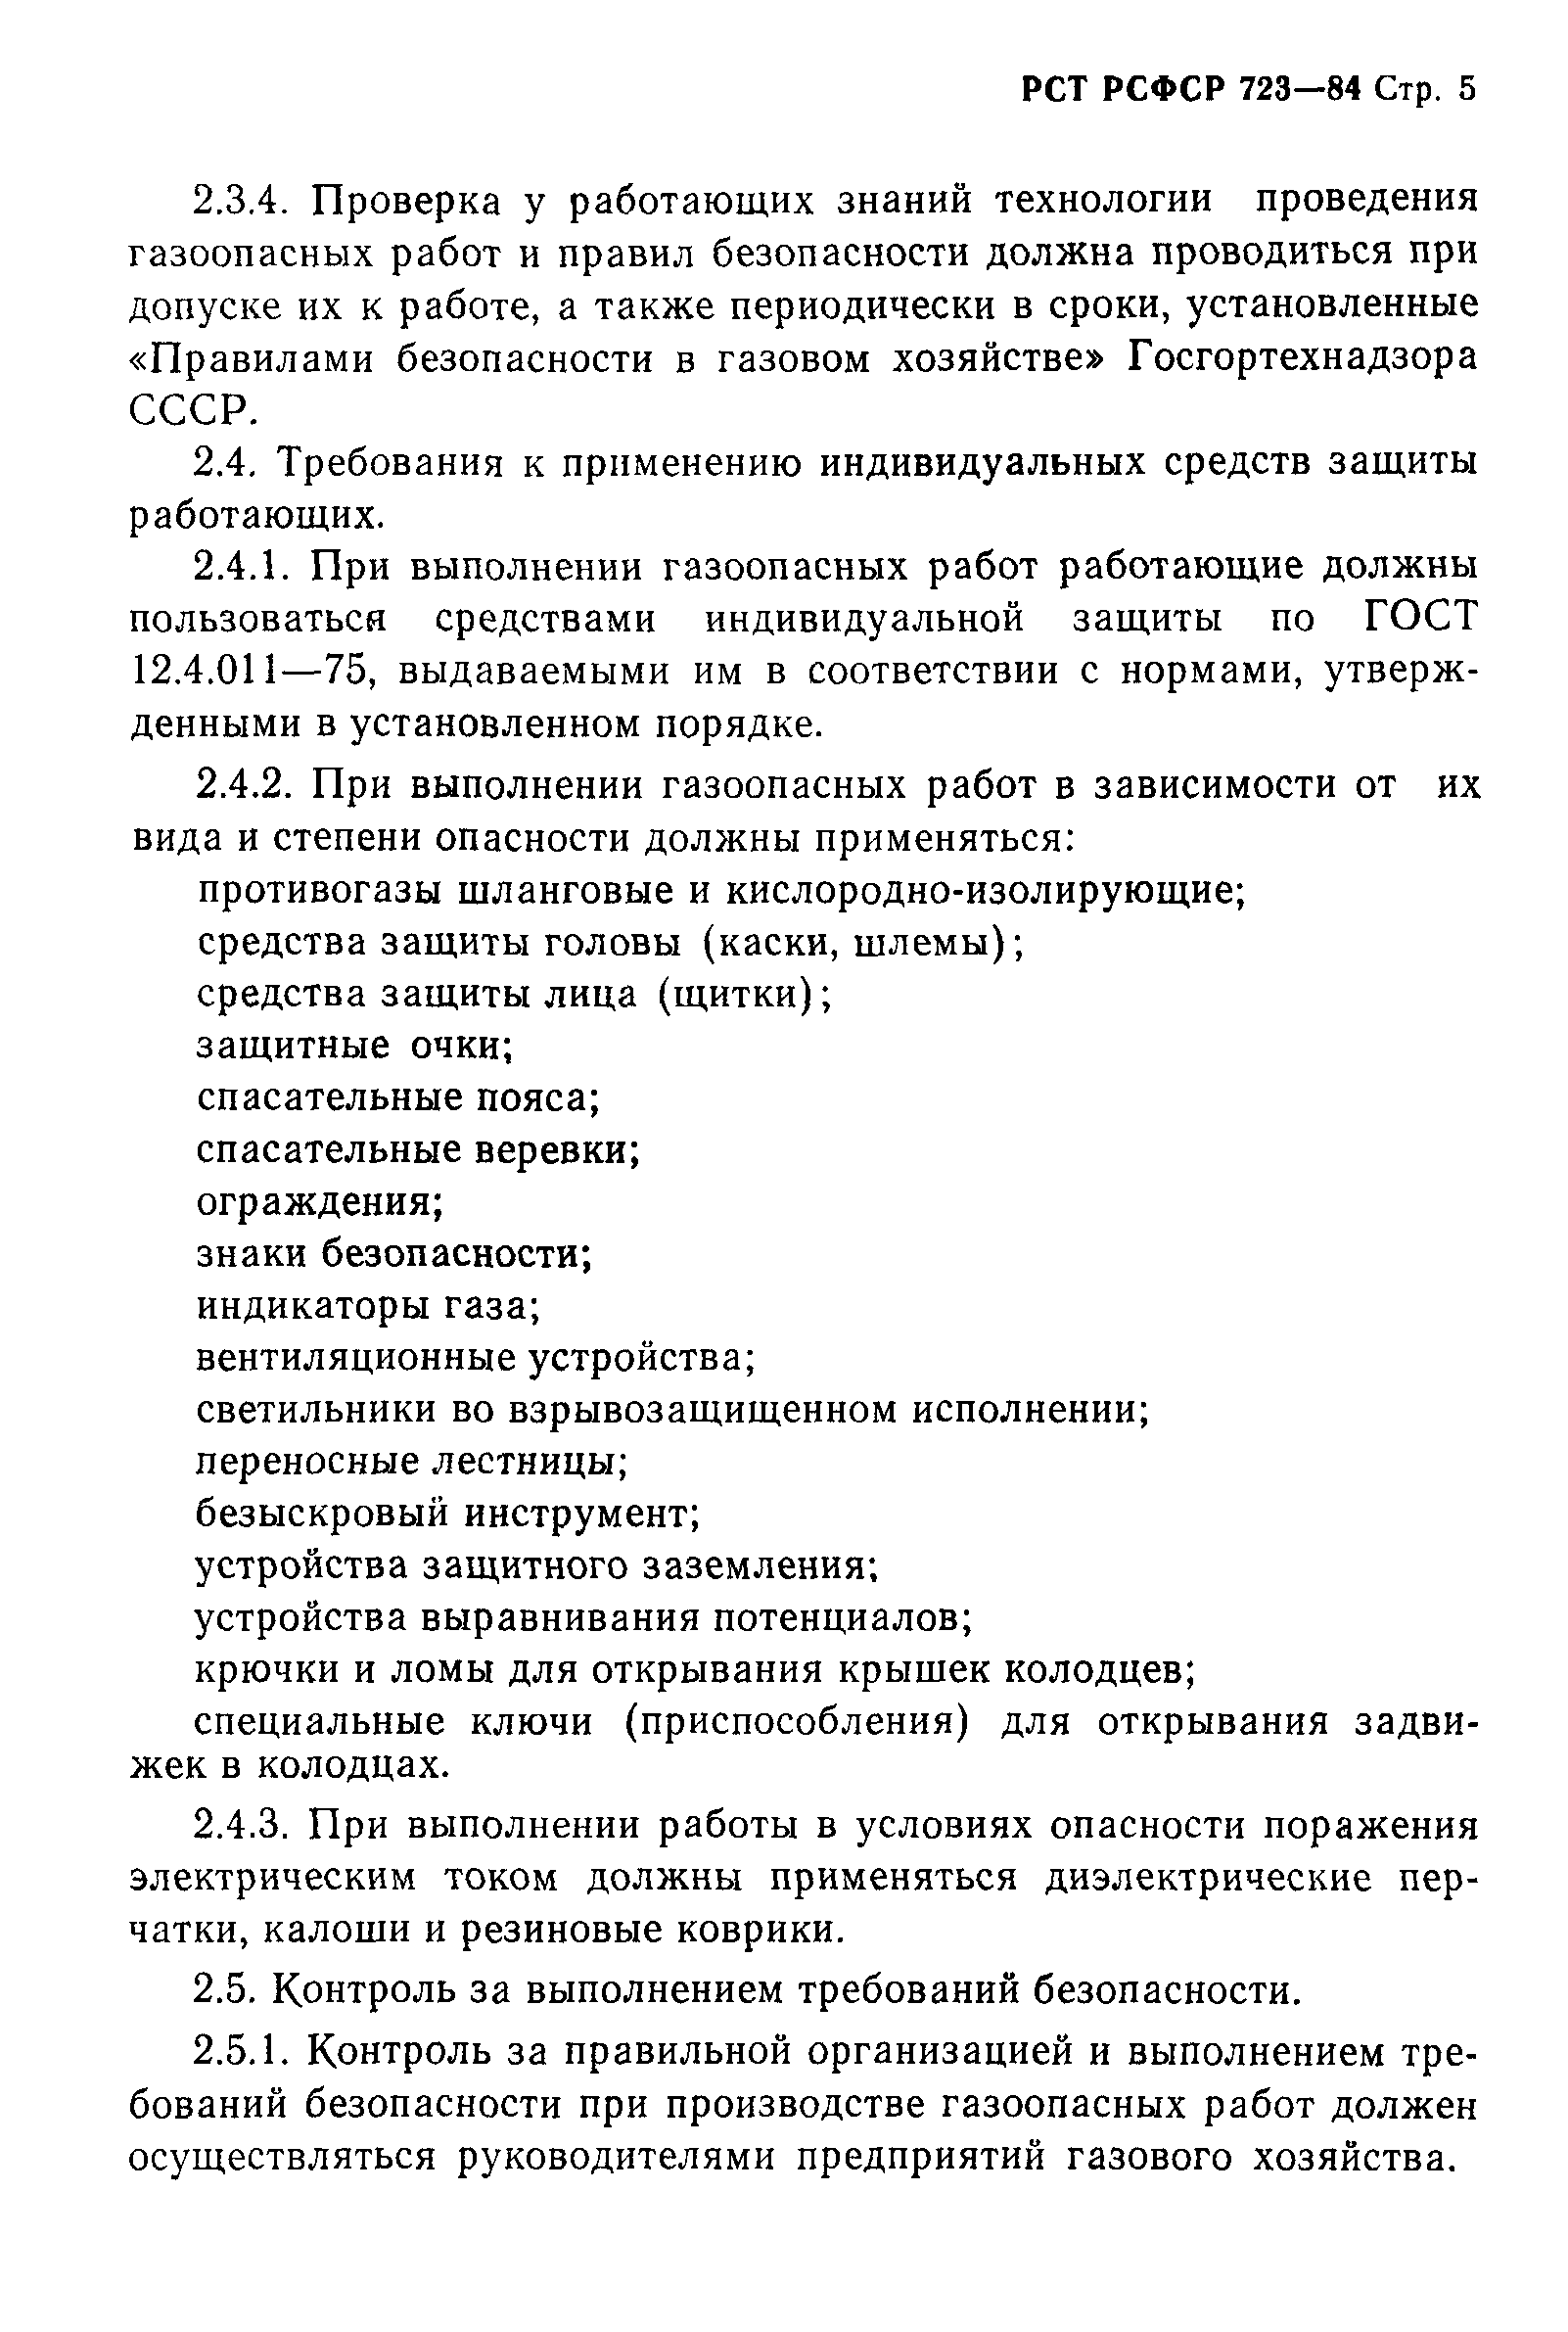 РСТ РСФСР 723-84